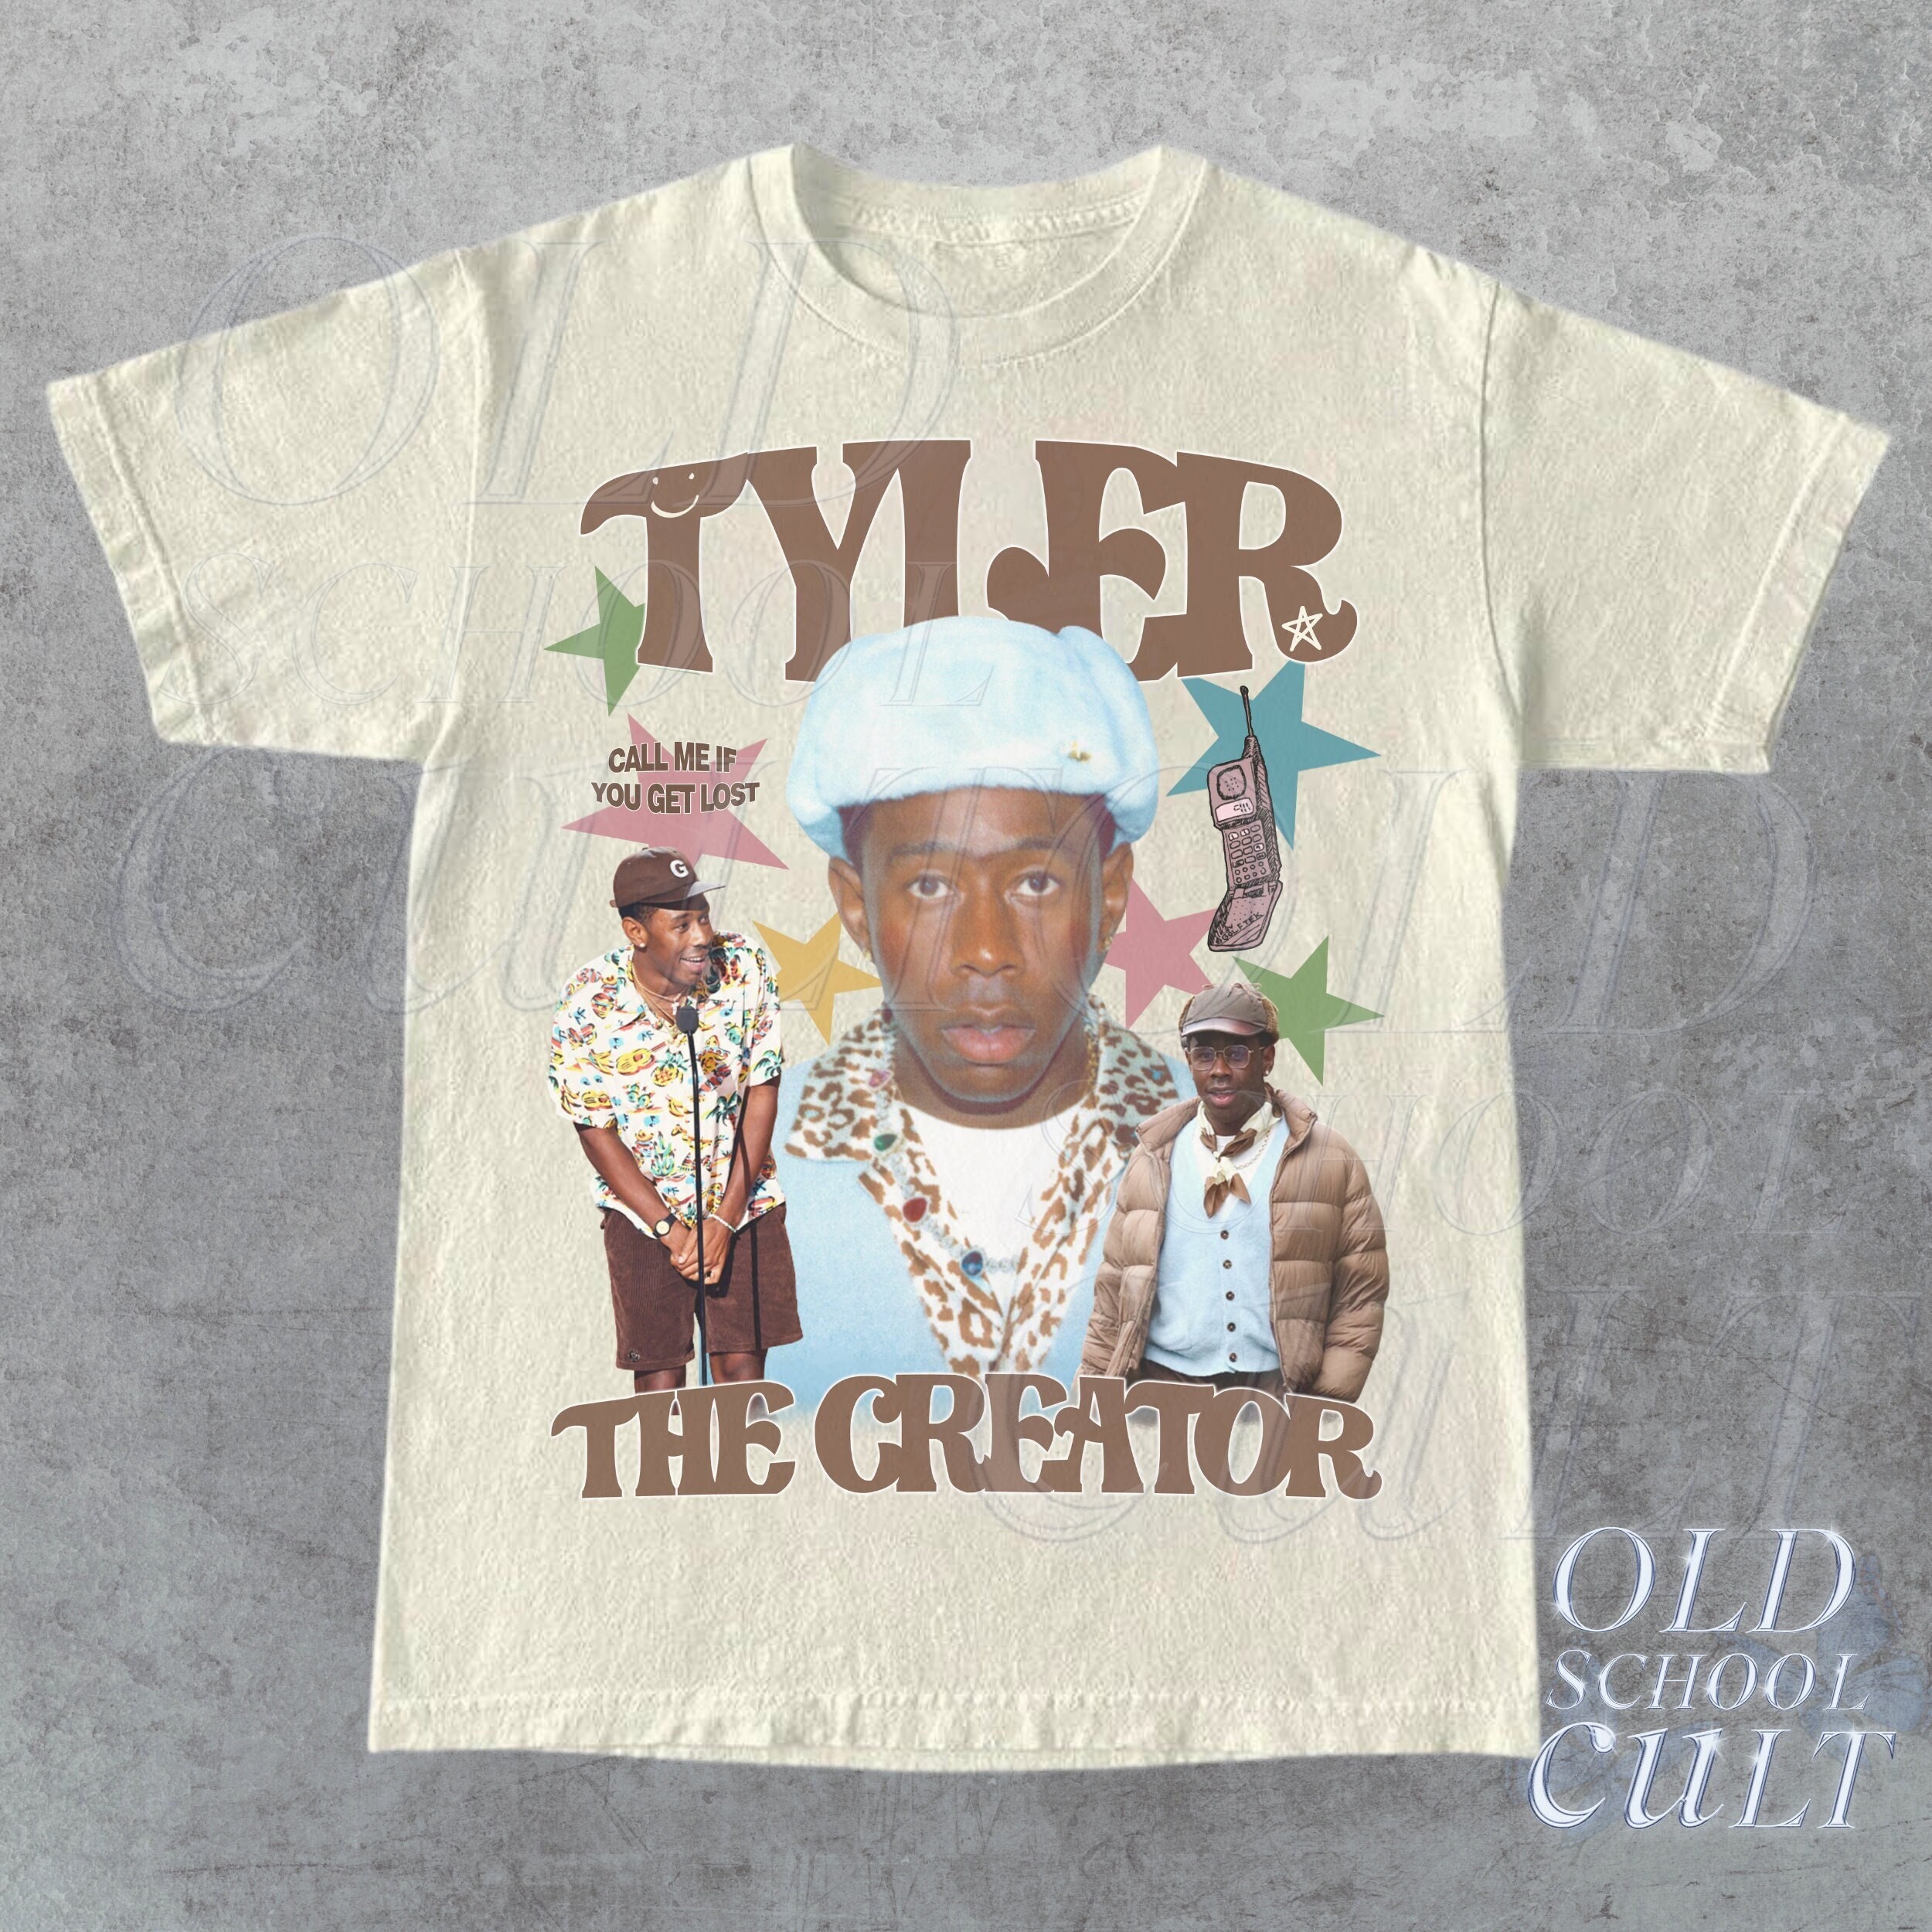 Tyler, the Creator [INSPO] : r/streetwear